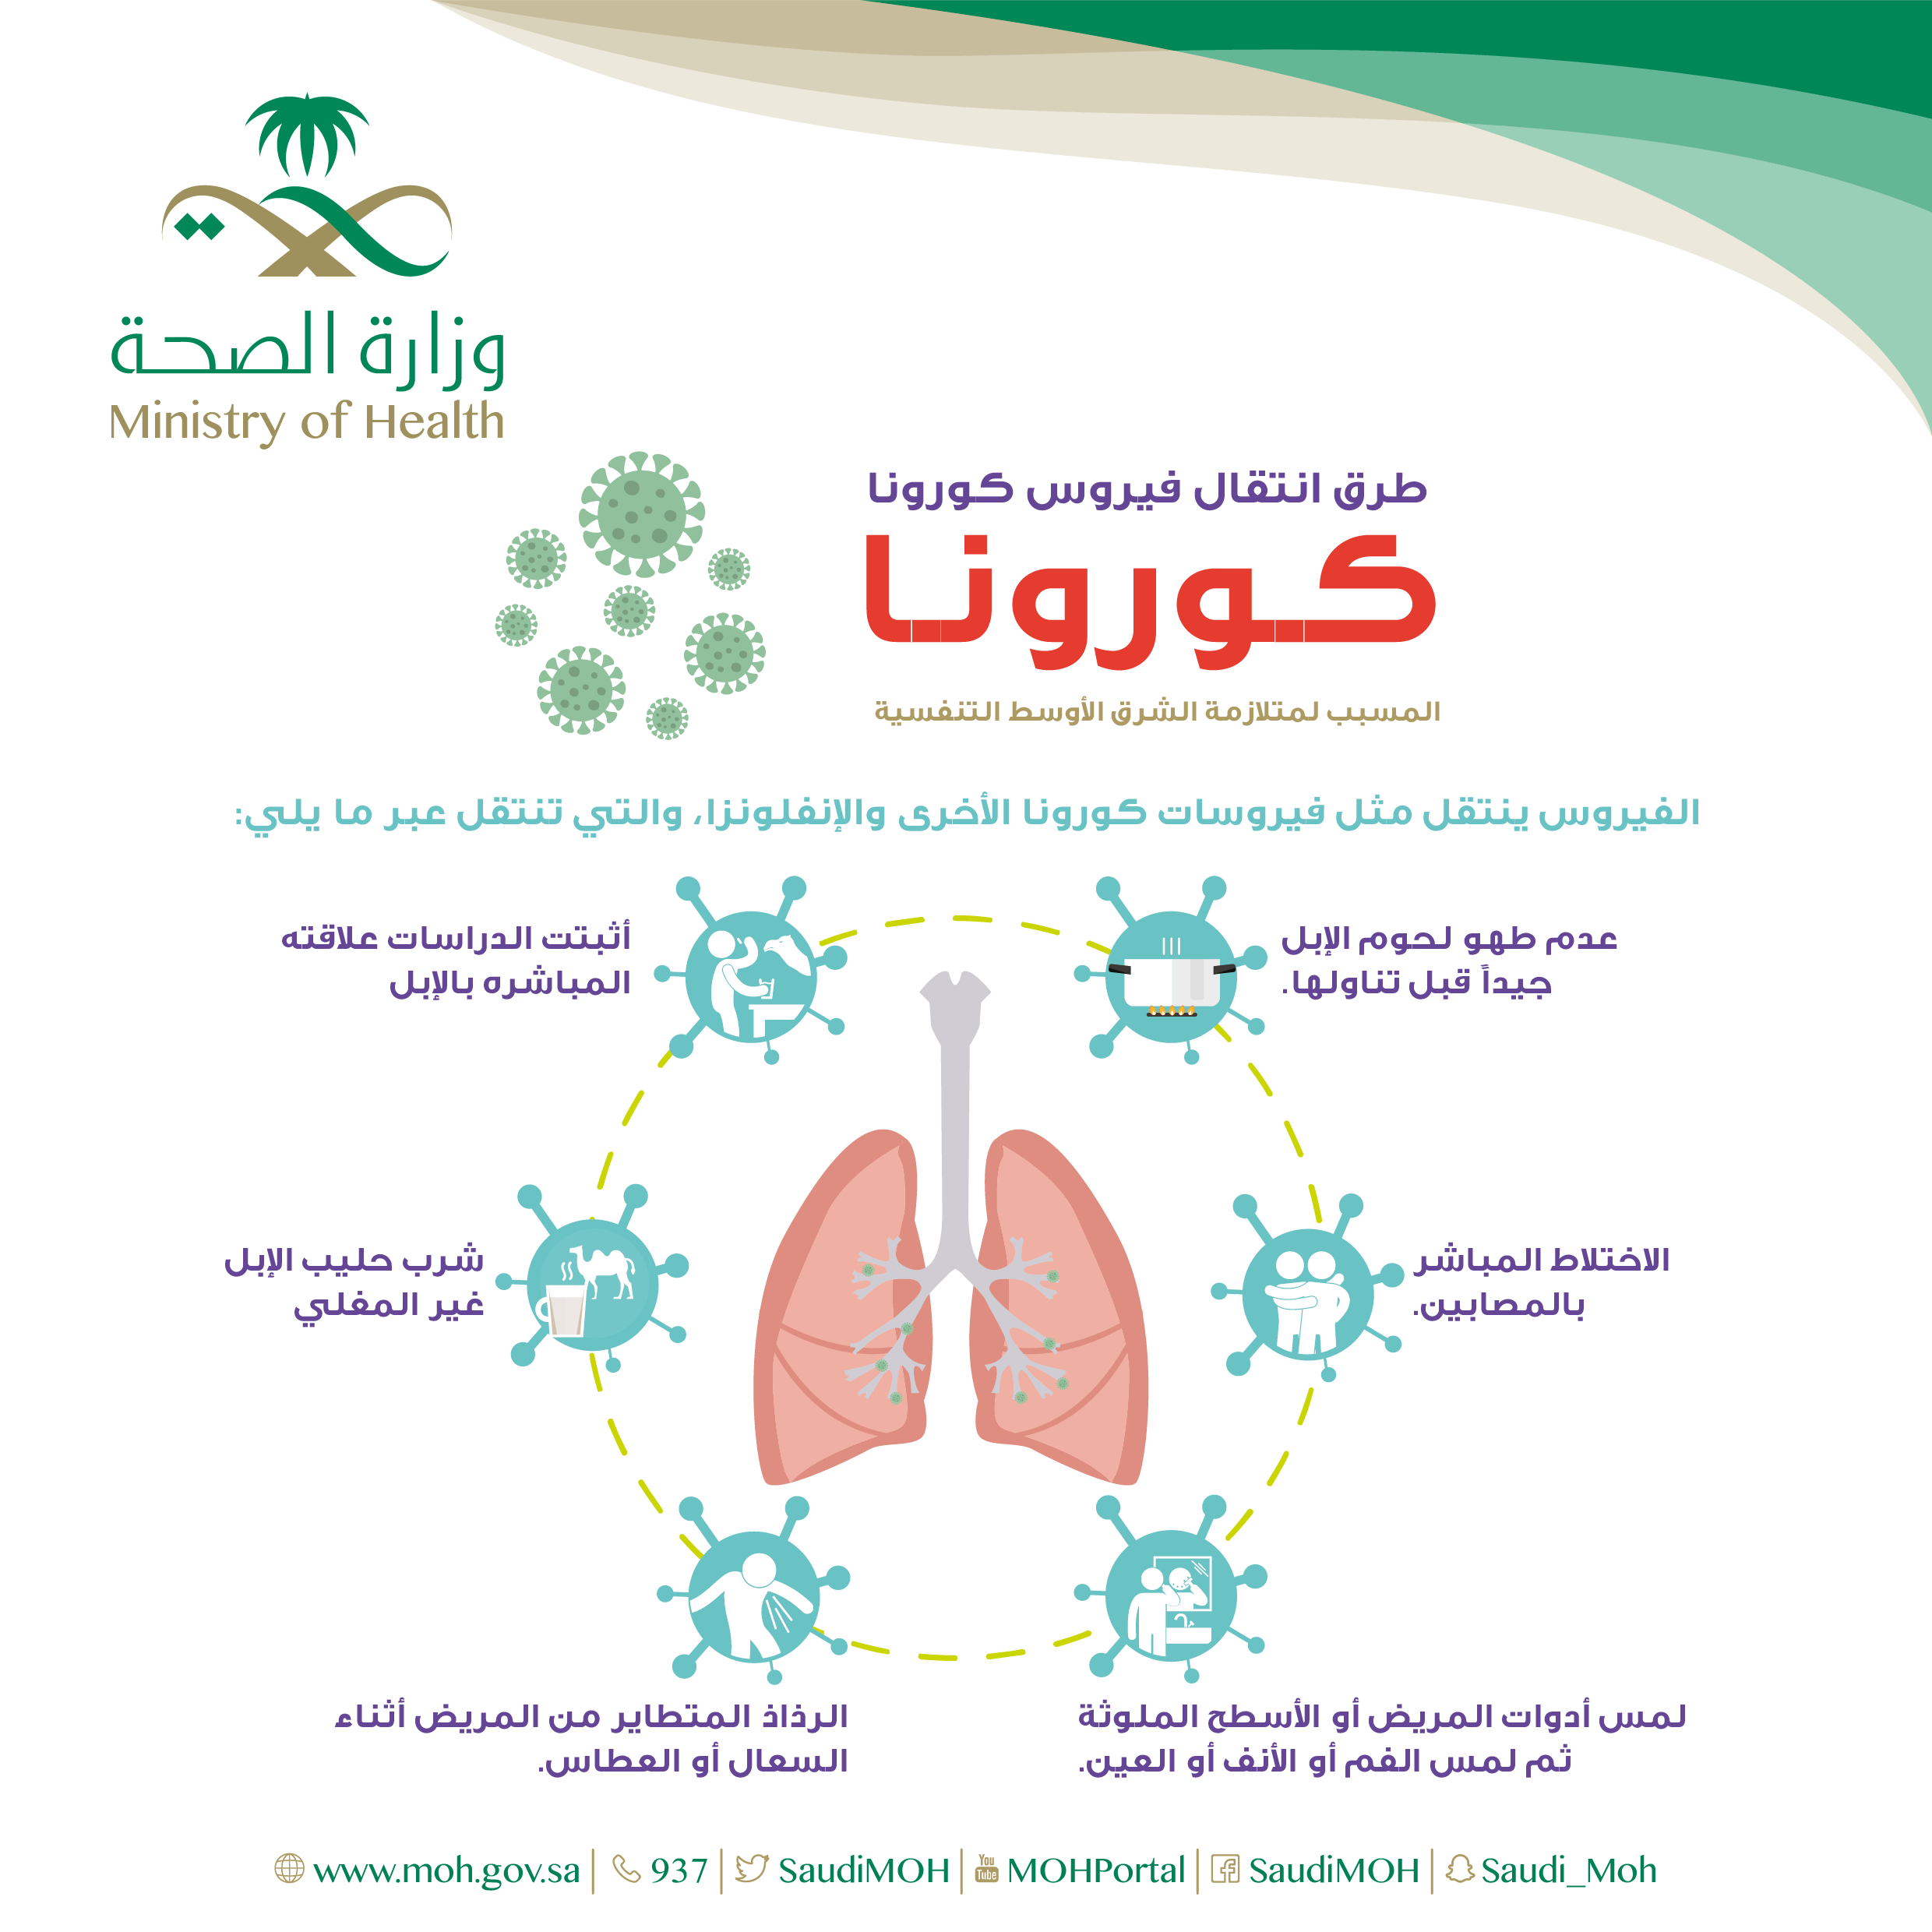 الصحة العامة فيروس كورونا MERS (المسبب لمتلازمة الشرق الأوسط التنفسية)